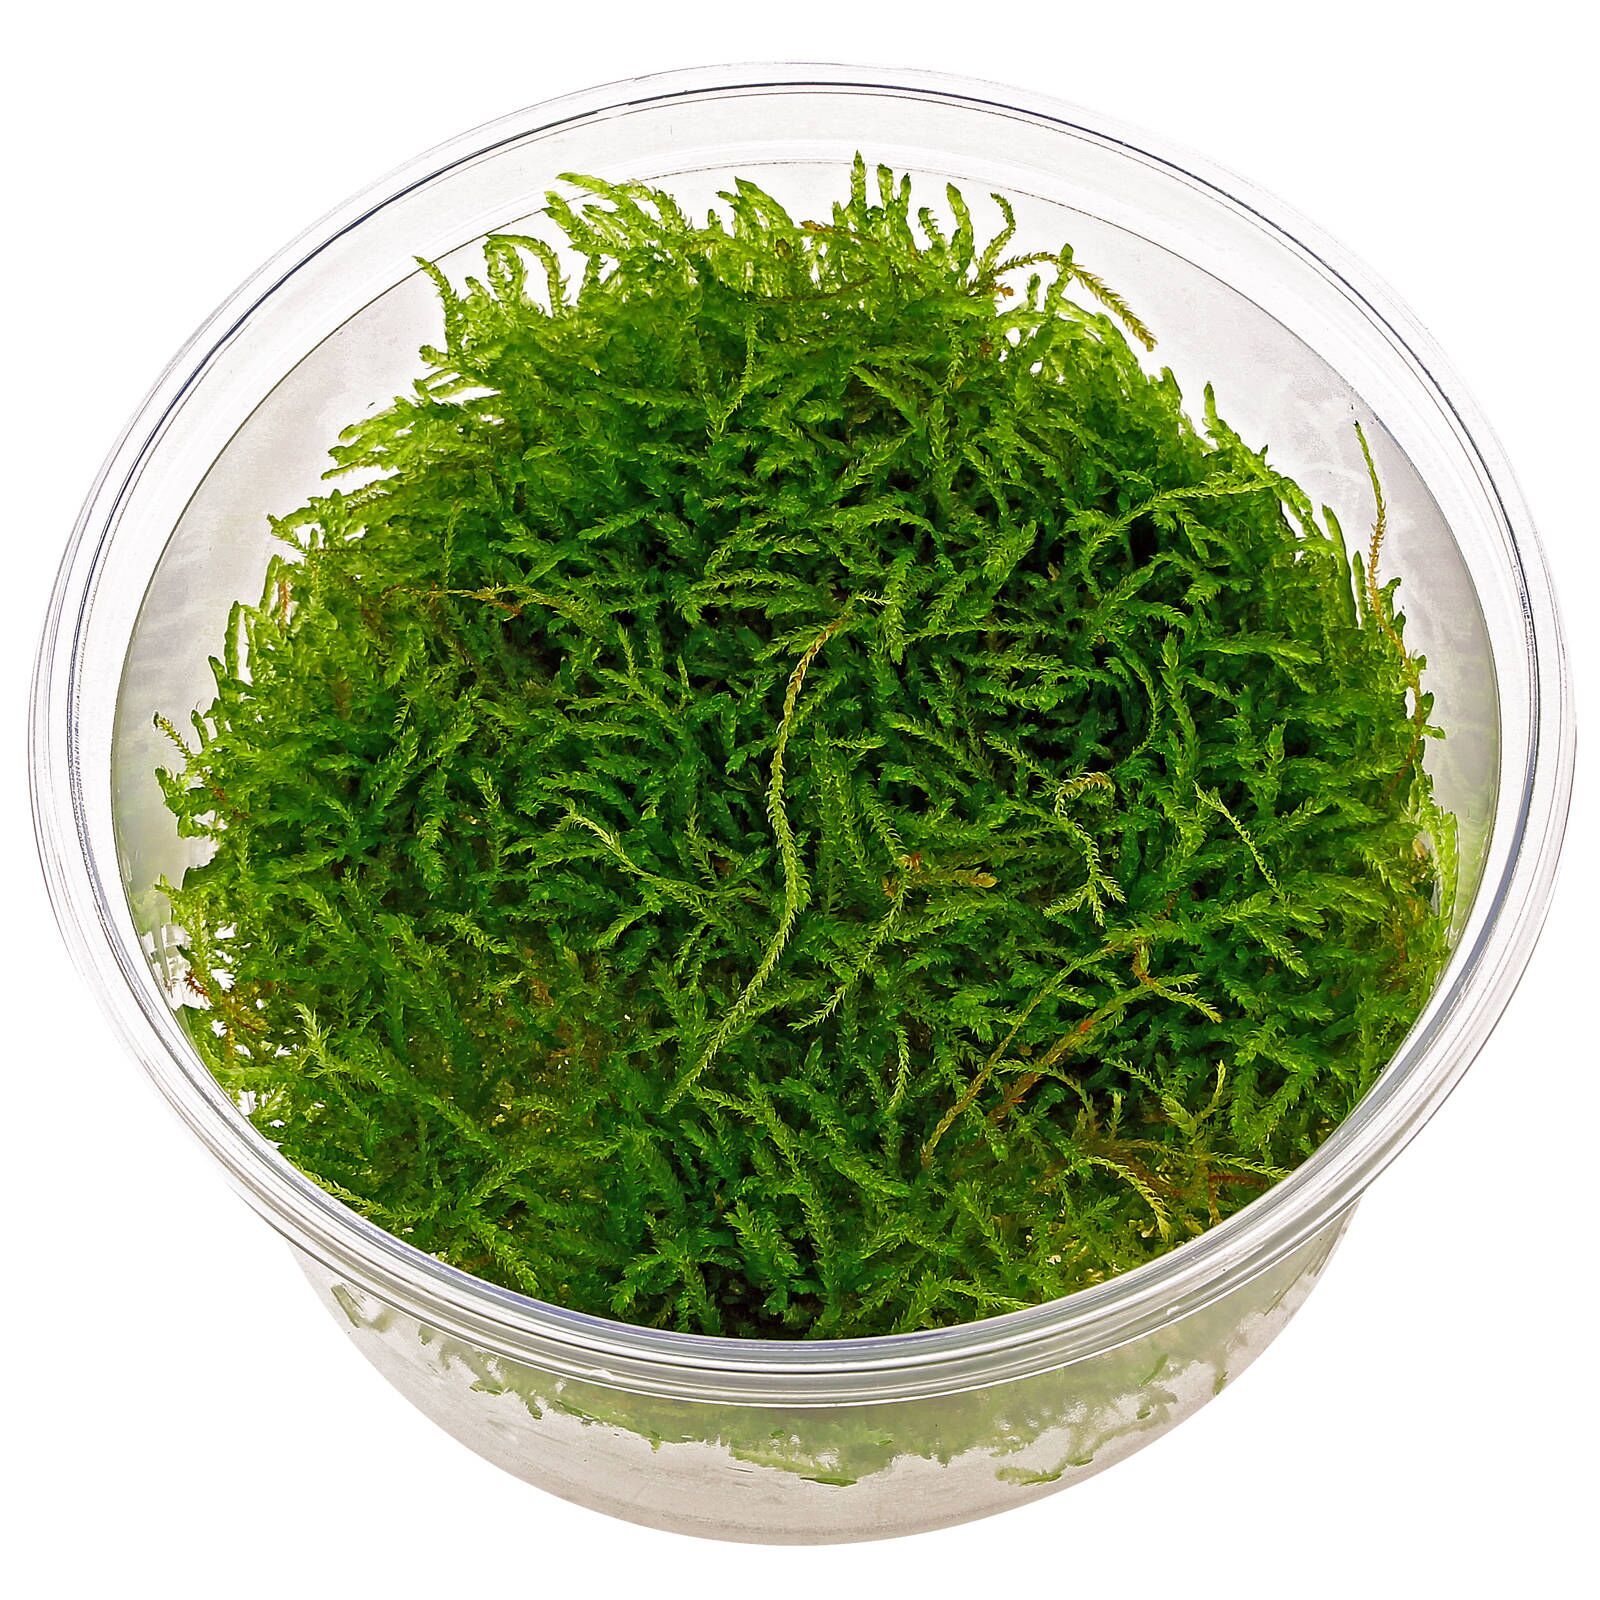 Java Moss for Aquariums - Taxiphyllum barbieri - Buy Live Plants – Great  Wave Aquatics